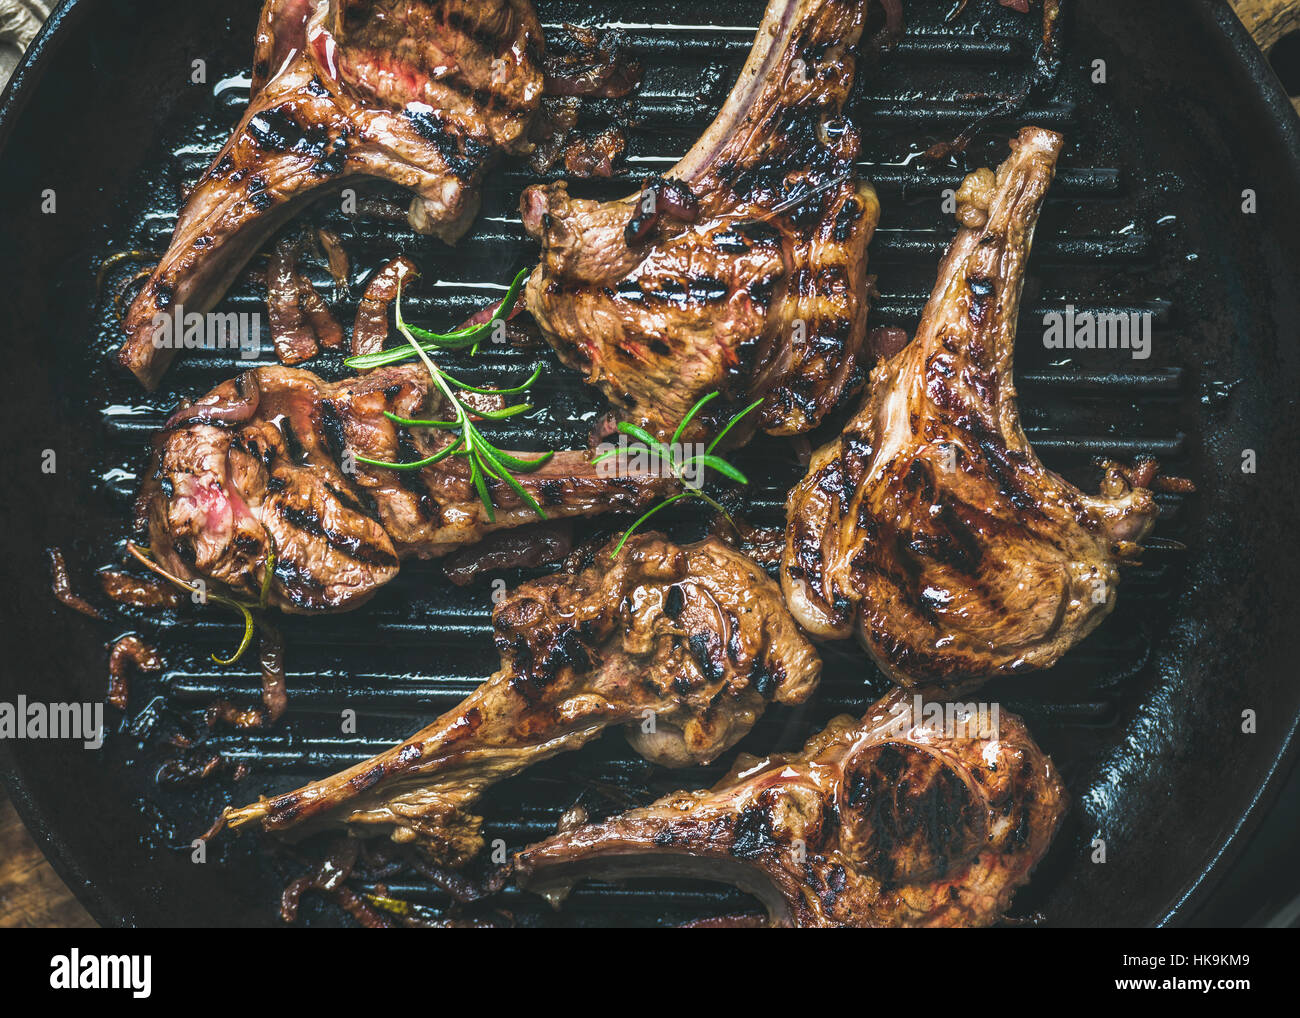 Cena a Barbecue. Agnello grigliata di carne trita con cipolla e rosmarino in ghisa nera pan, vista dall'alto, close-up. Slow food concept Foto Stock